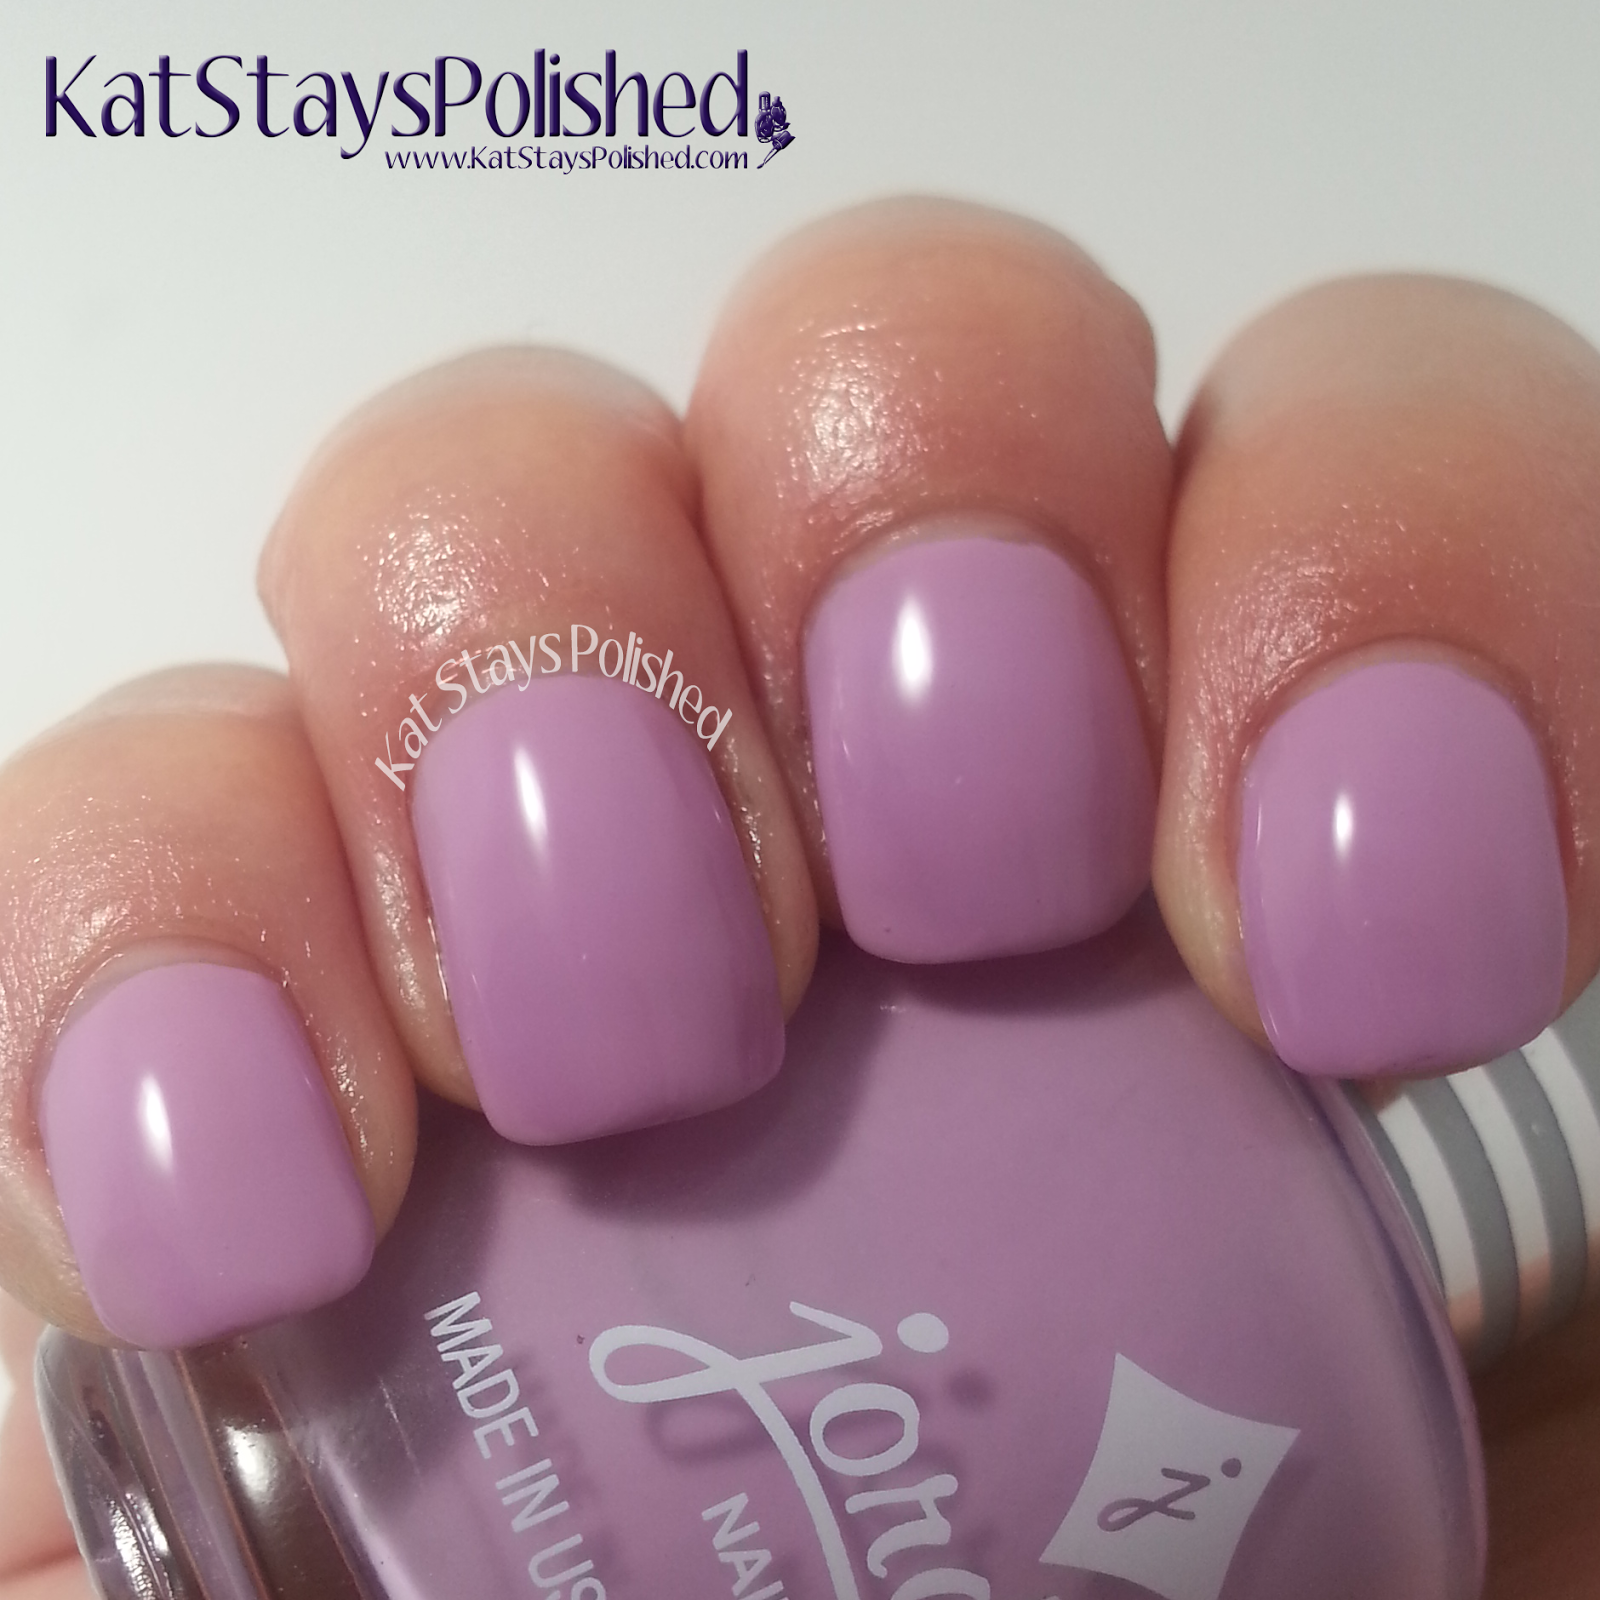 Jordana Playful Pastels - Lively Lilac | Kat Stays Polished